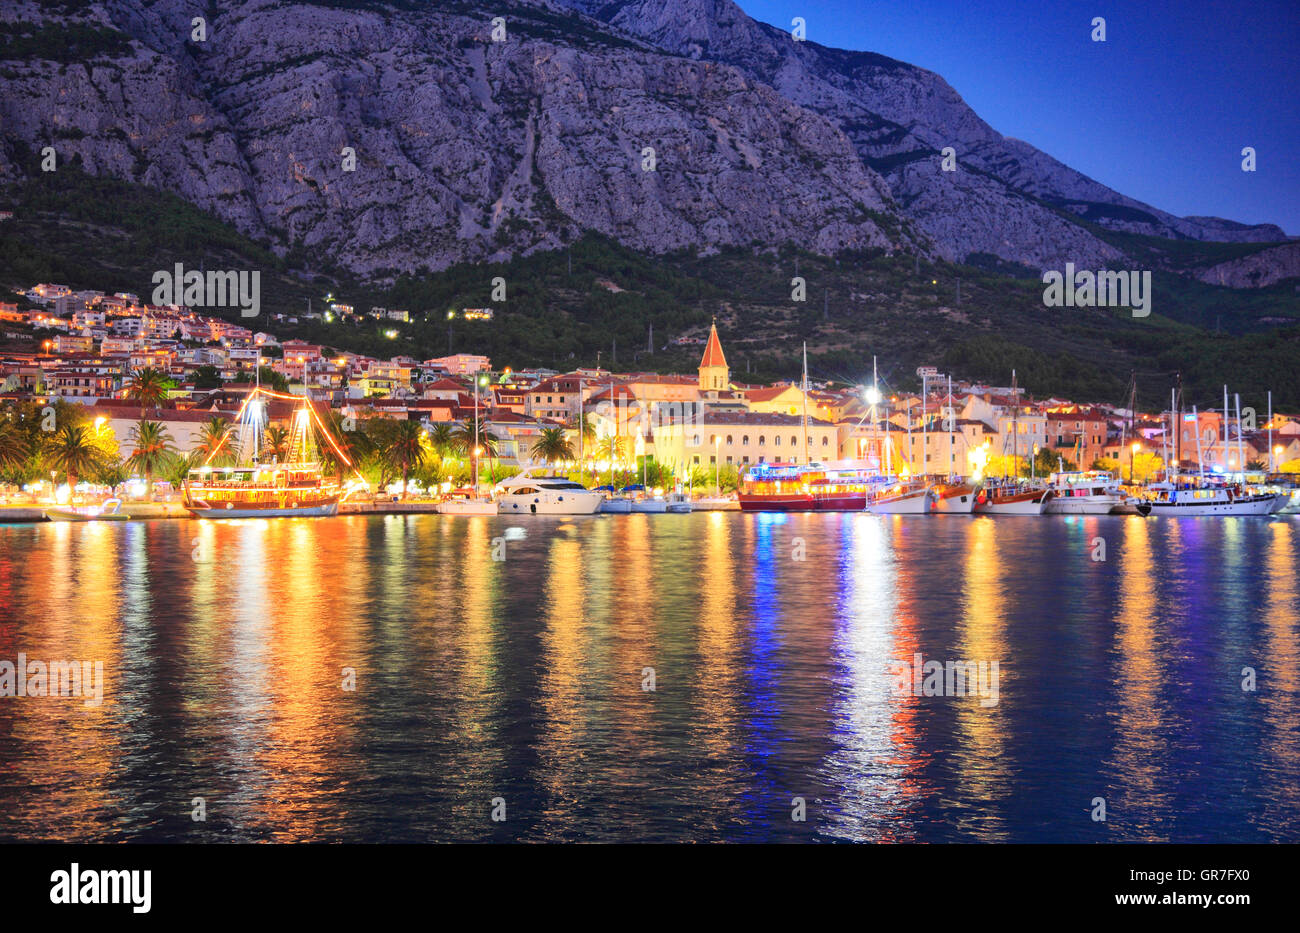 Makarska waterfront at night. Stock Photo